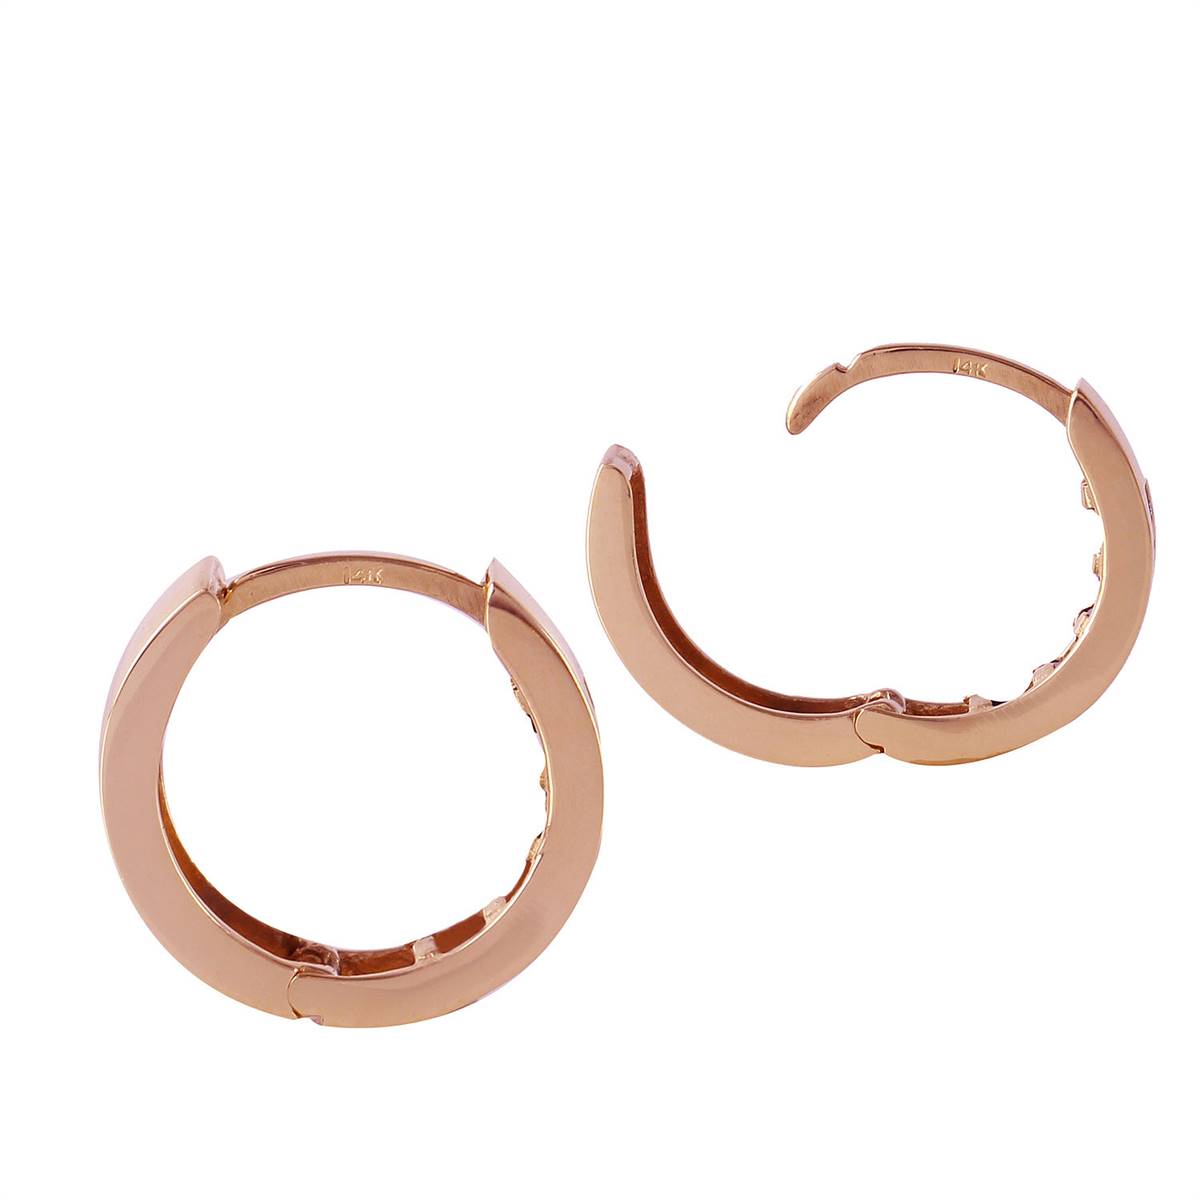 1.3 Carat 14K Solid Rose Gold Hoop Earrings Natural Ruby